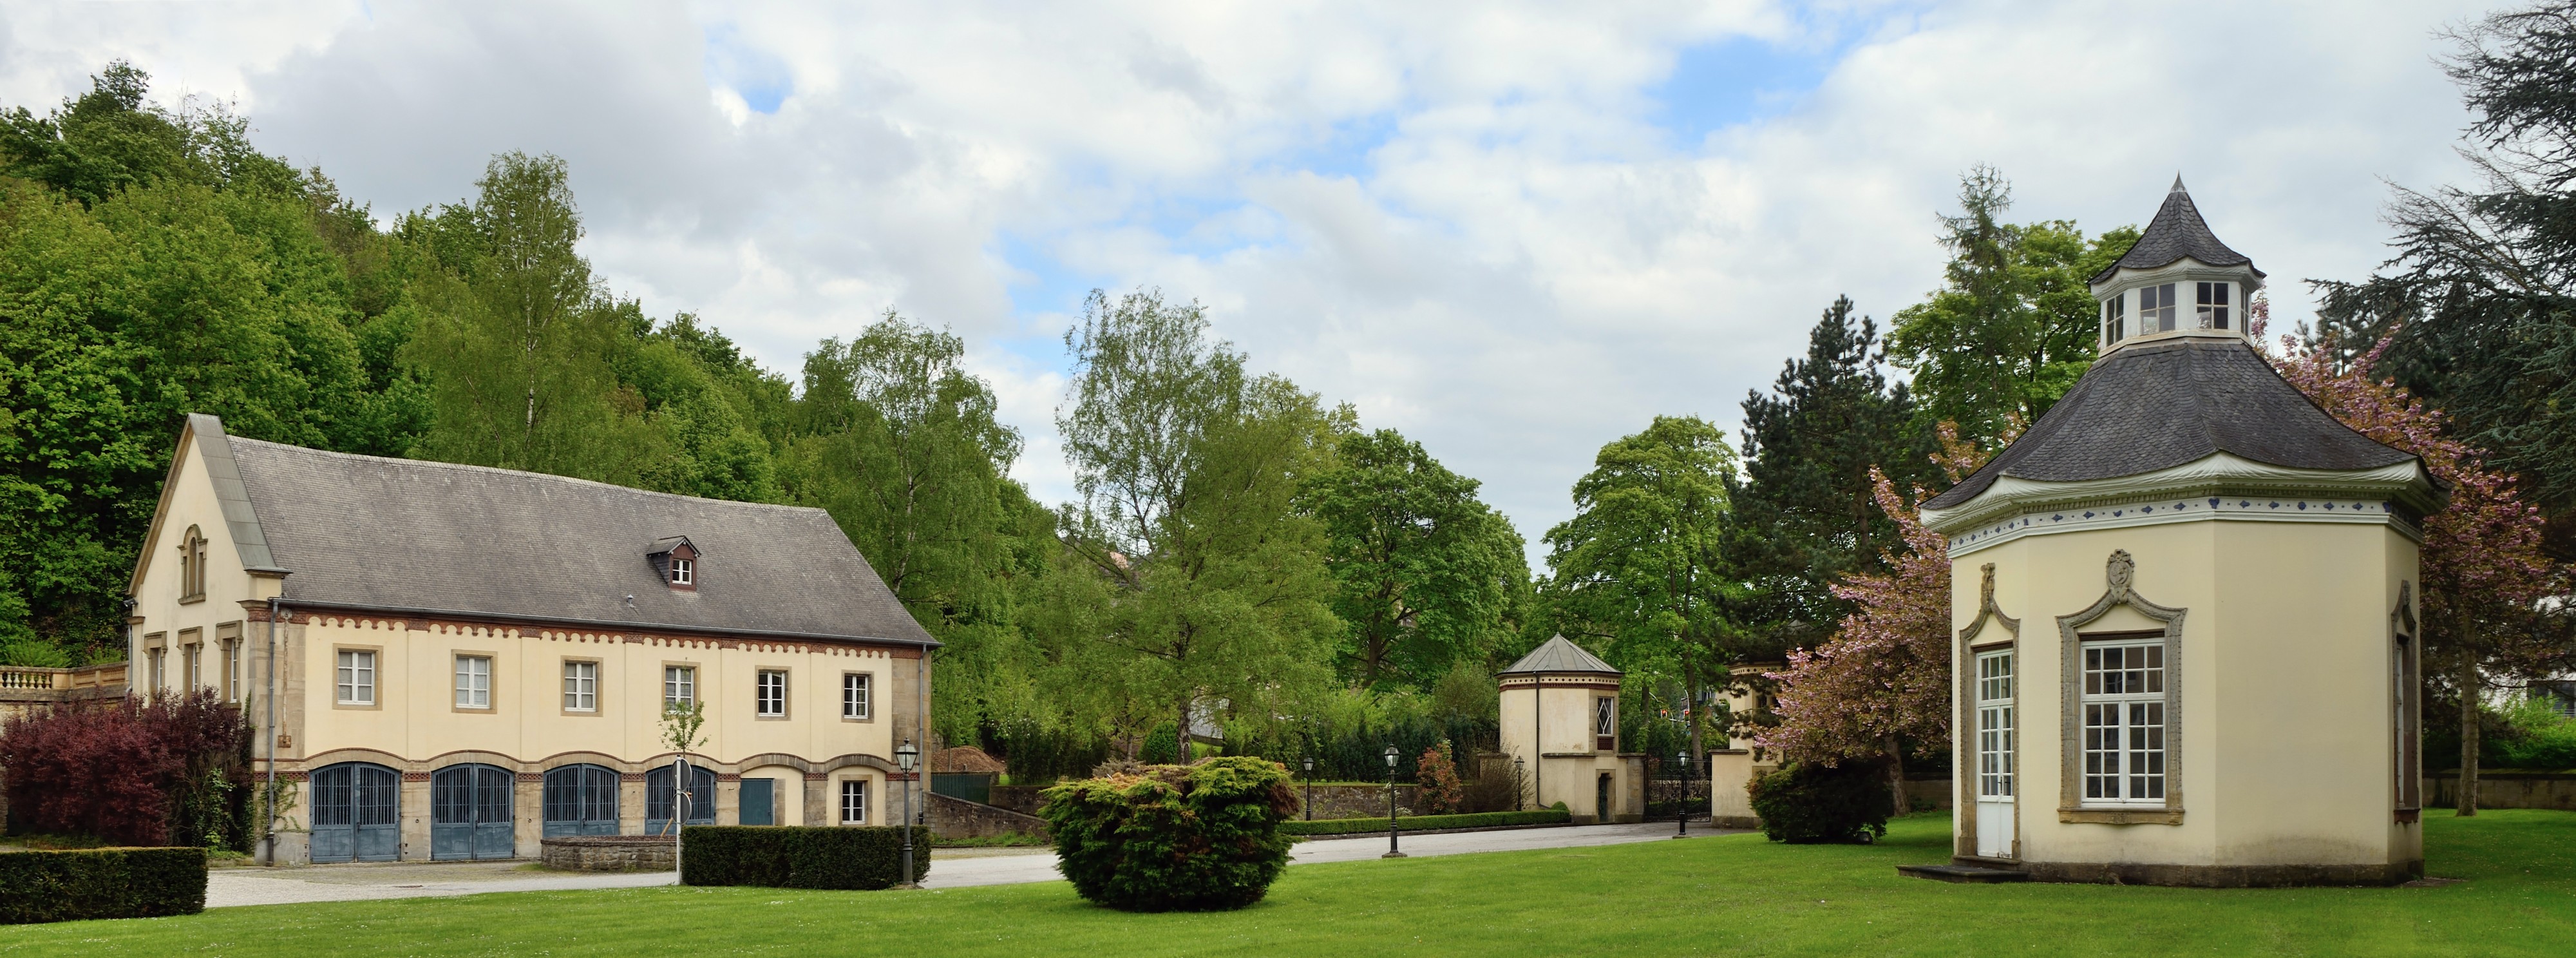 Rollingergrund Château de Septfontaines pavilions